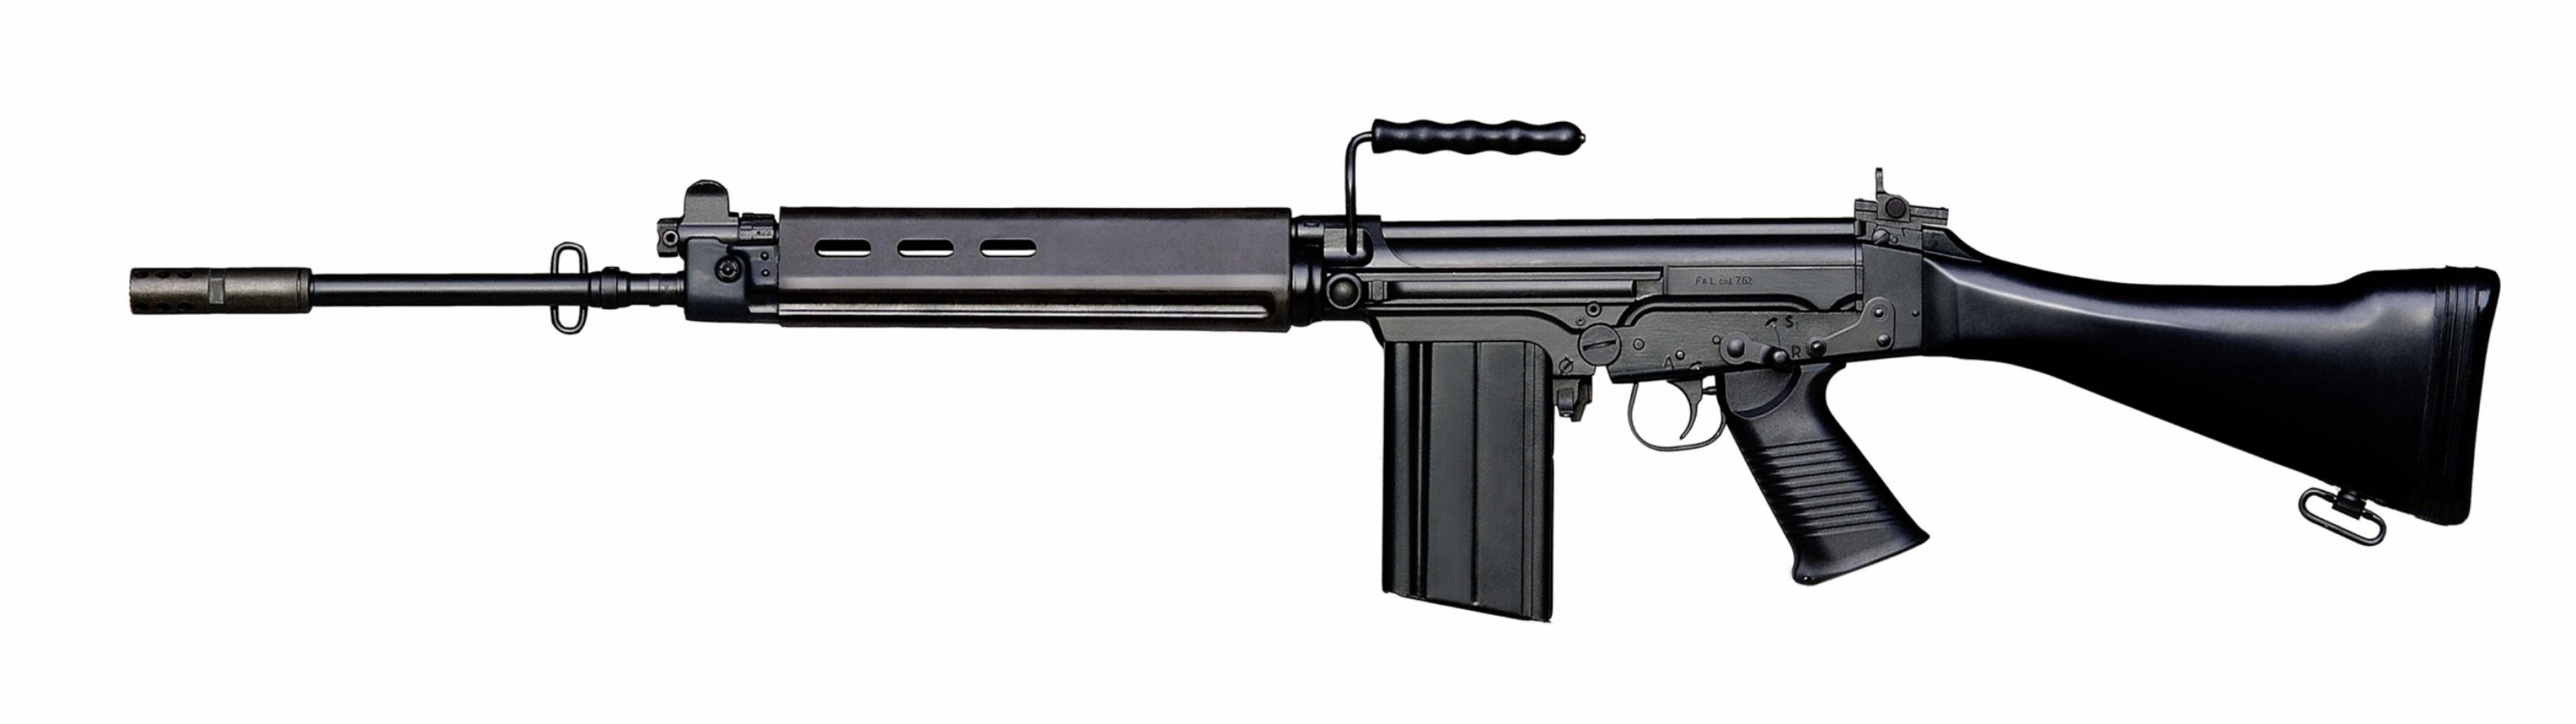 Gun FN FAL Rifles Black Rifle 3840x1080